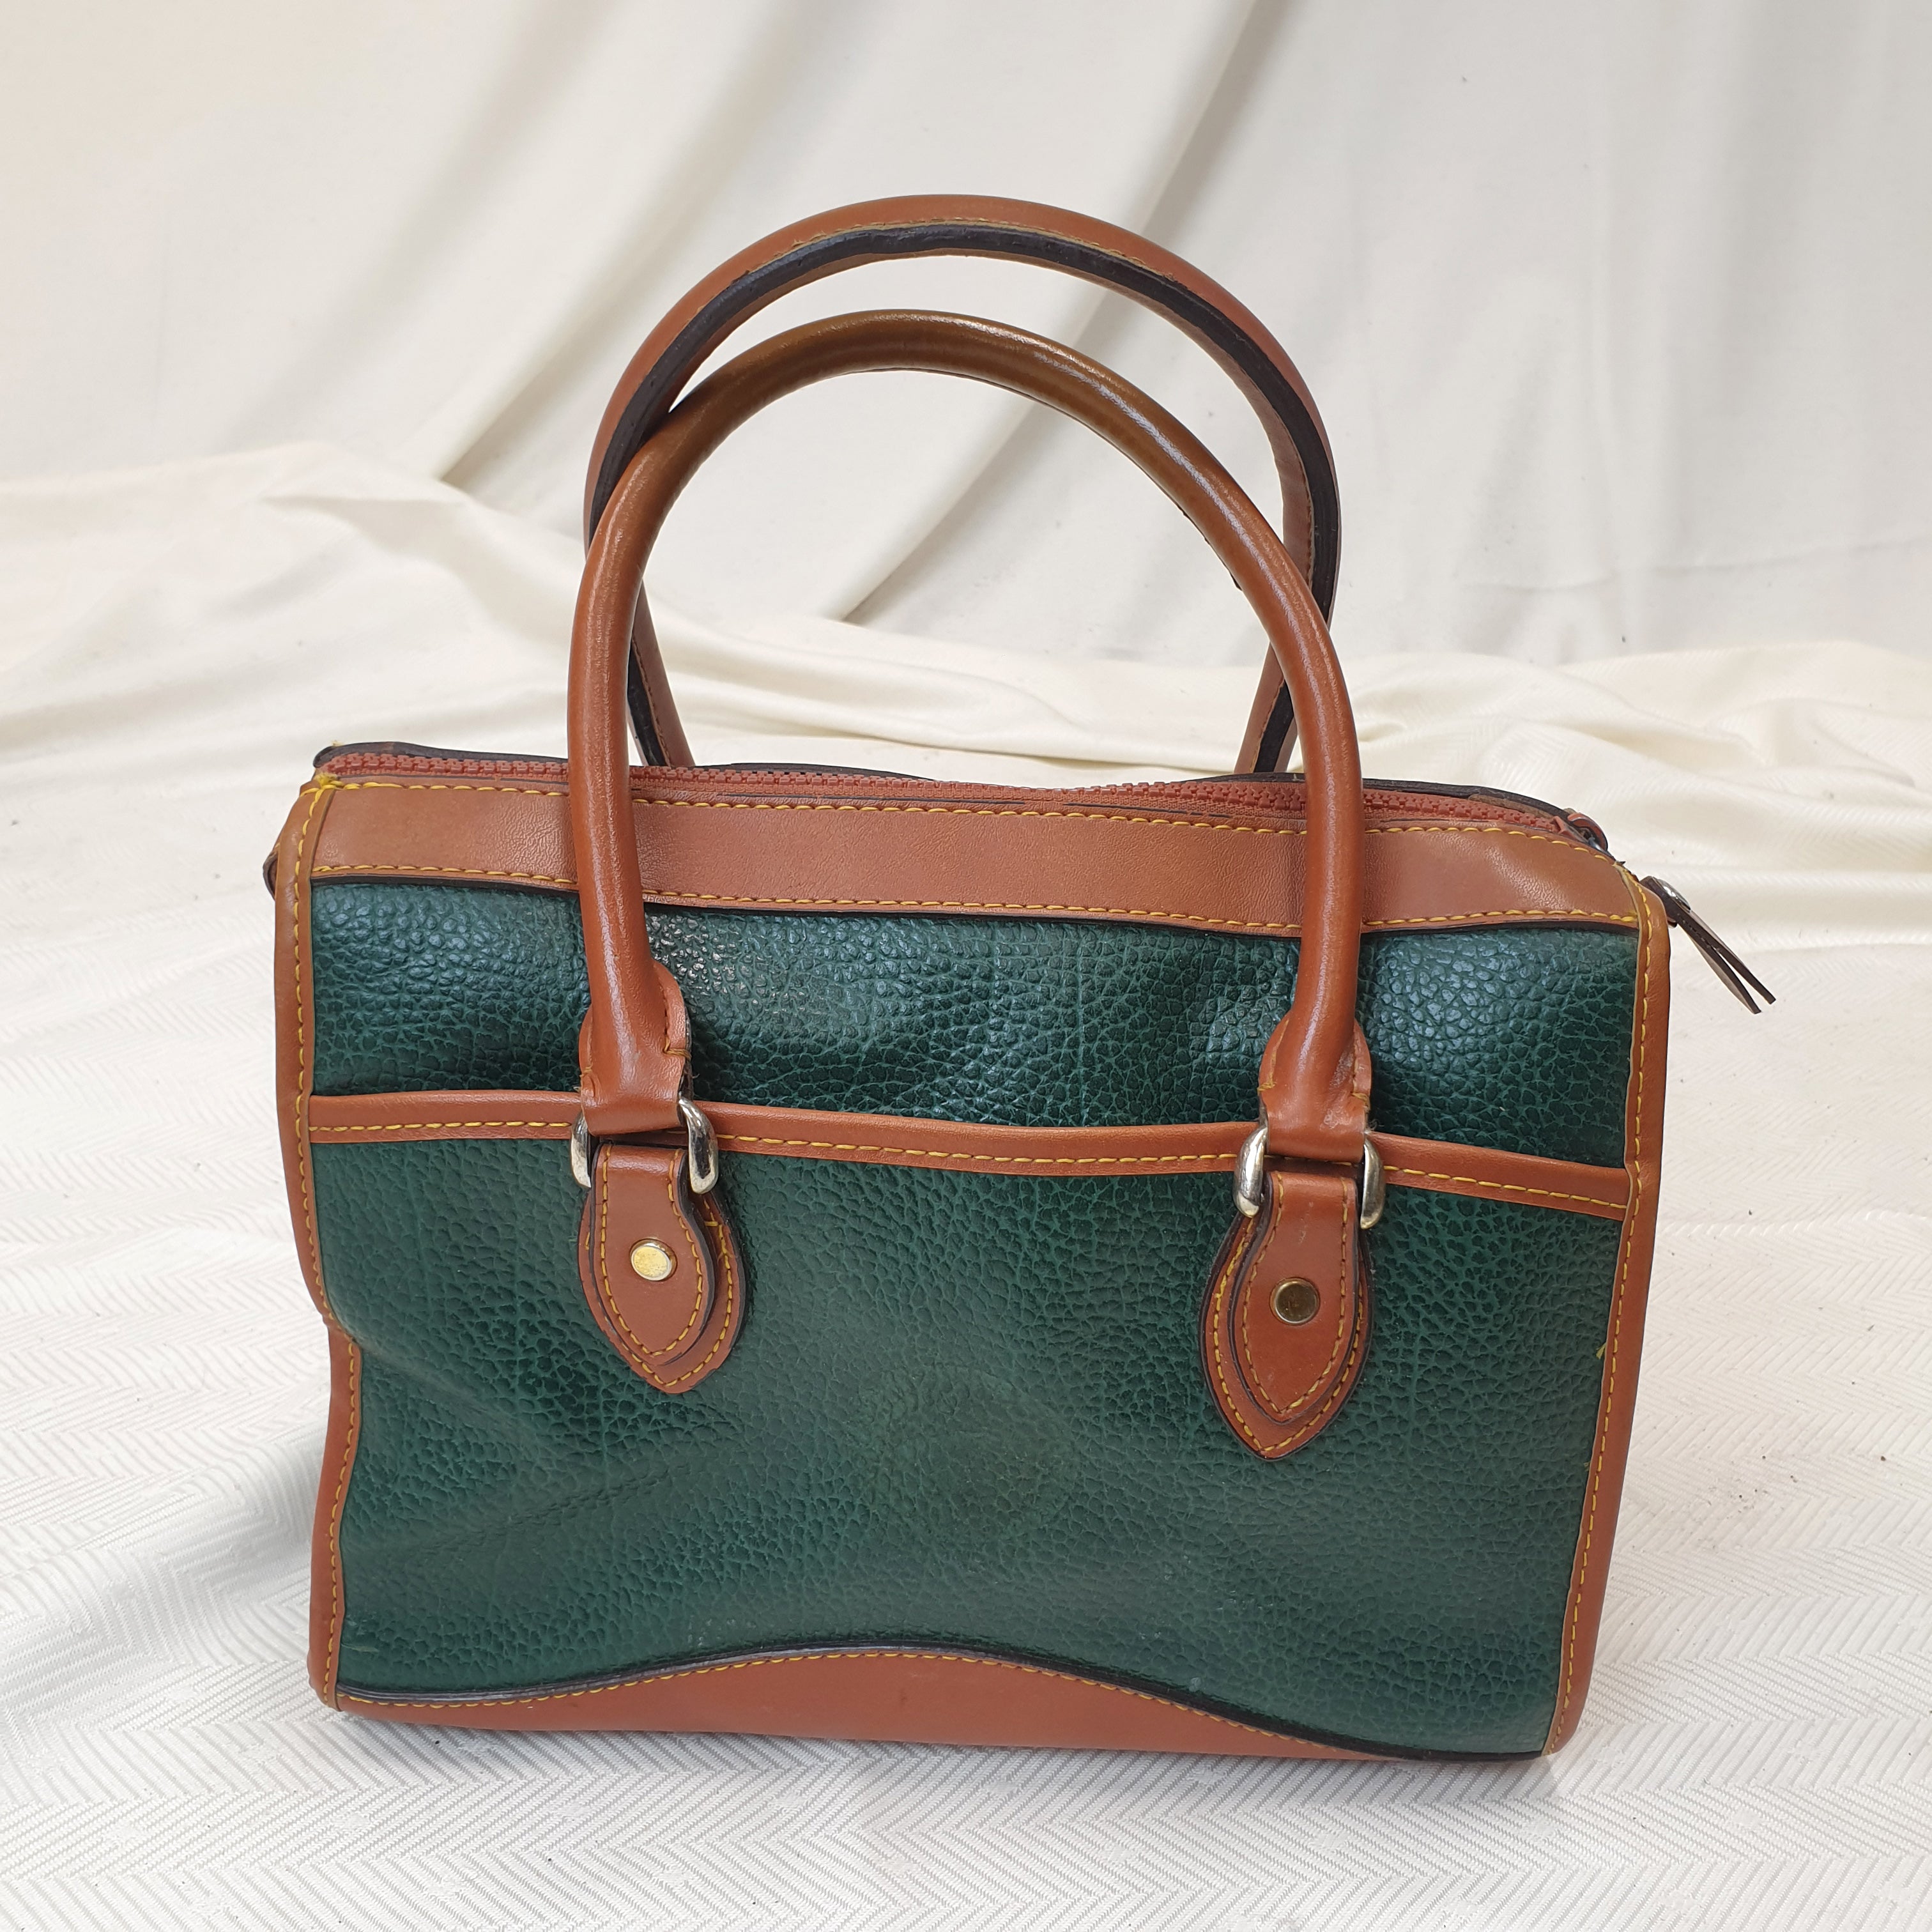 Dooney & Bourke Green Leather Handbag